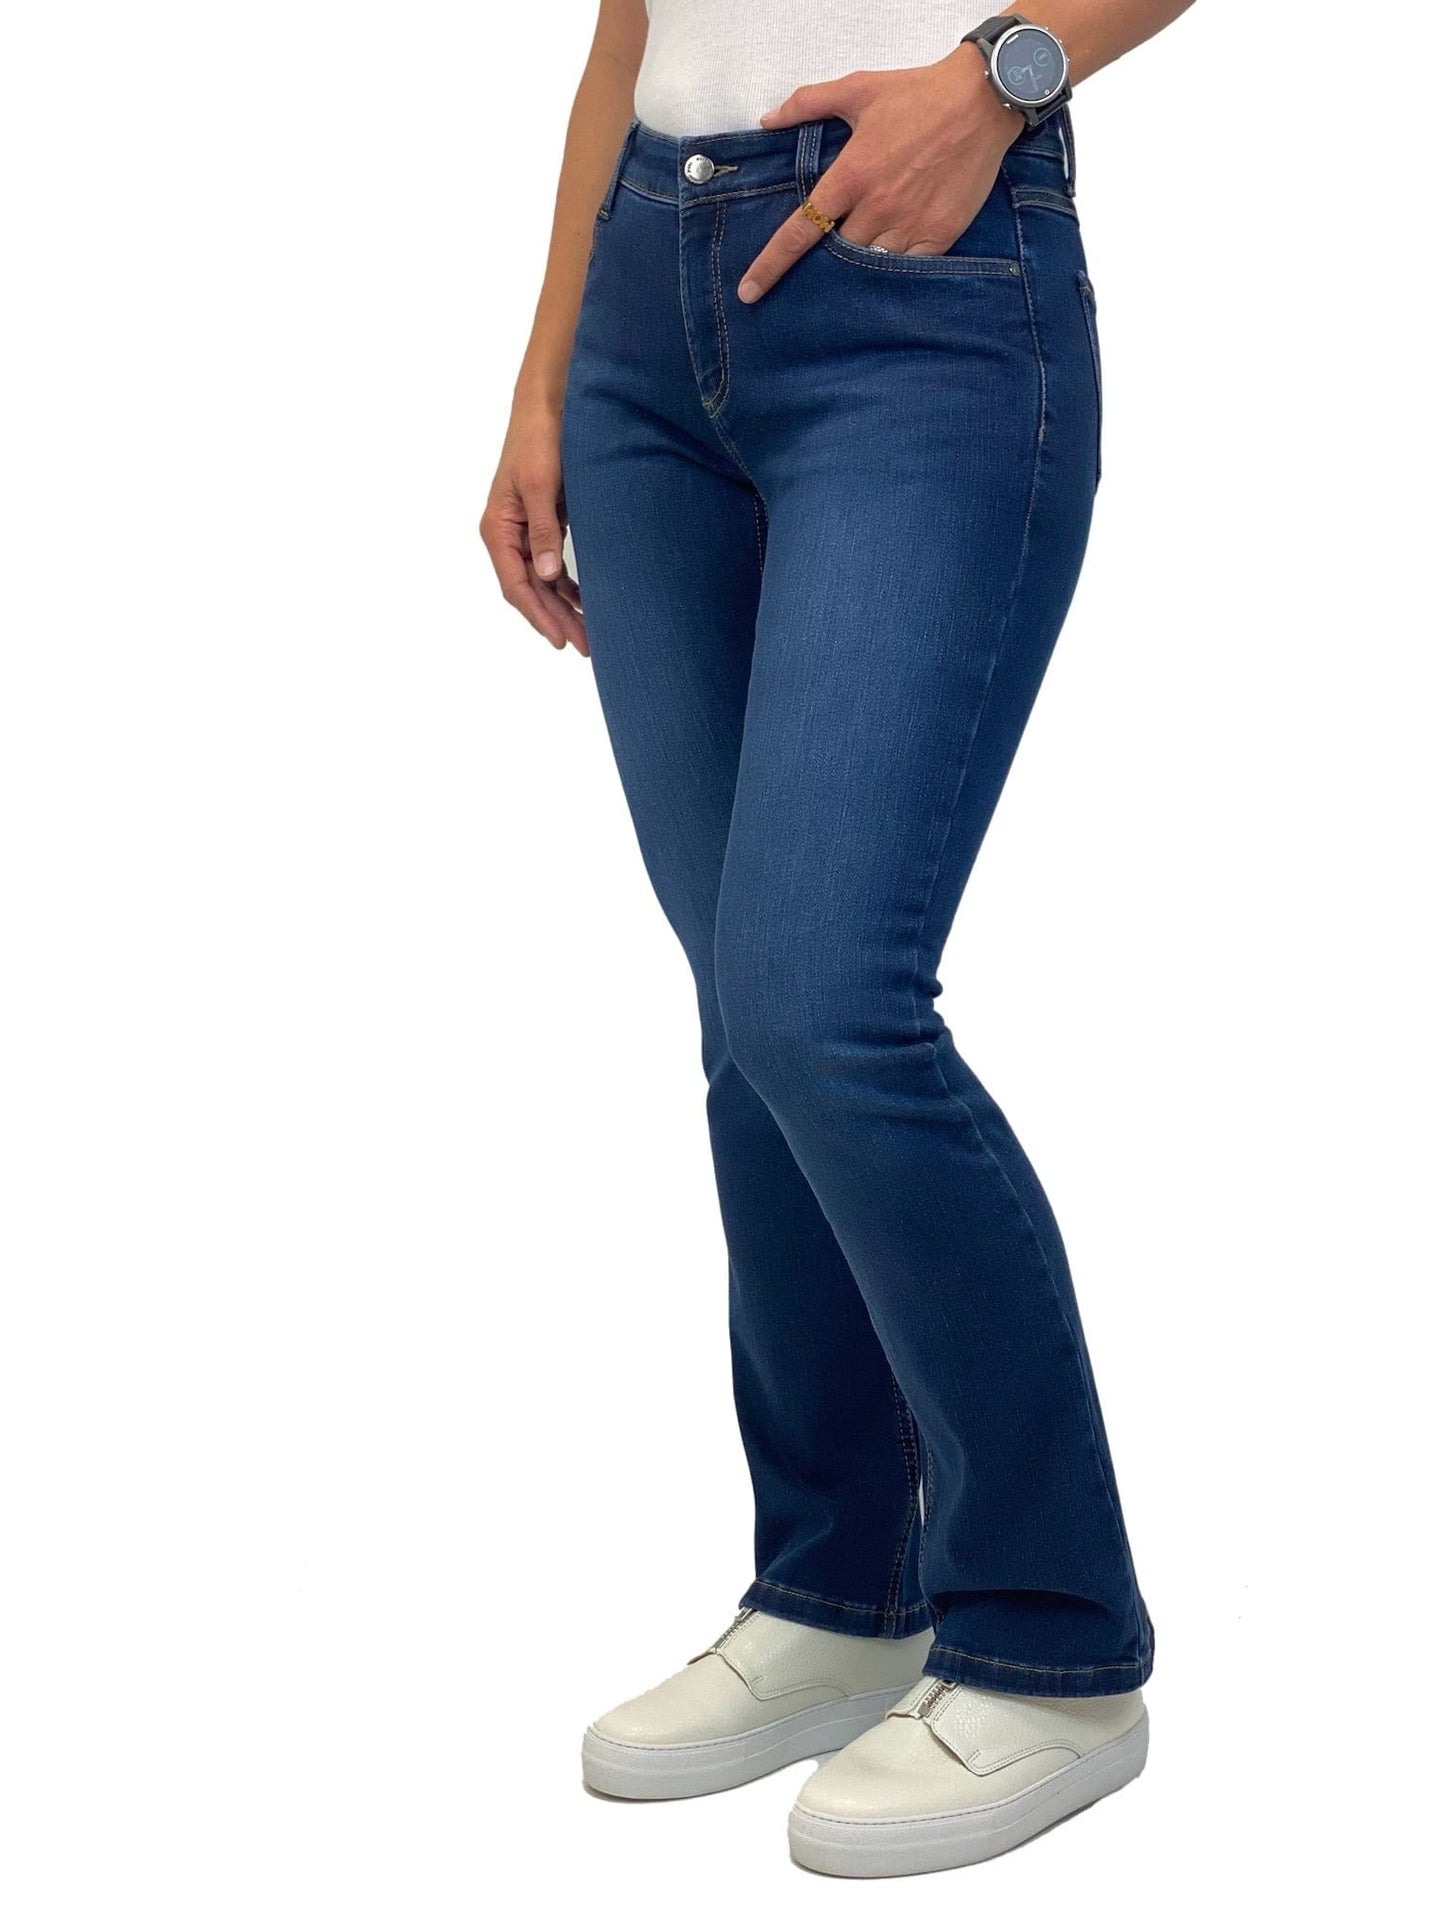 Sapatos Bukser Bootcut jeans short, Authentic blue